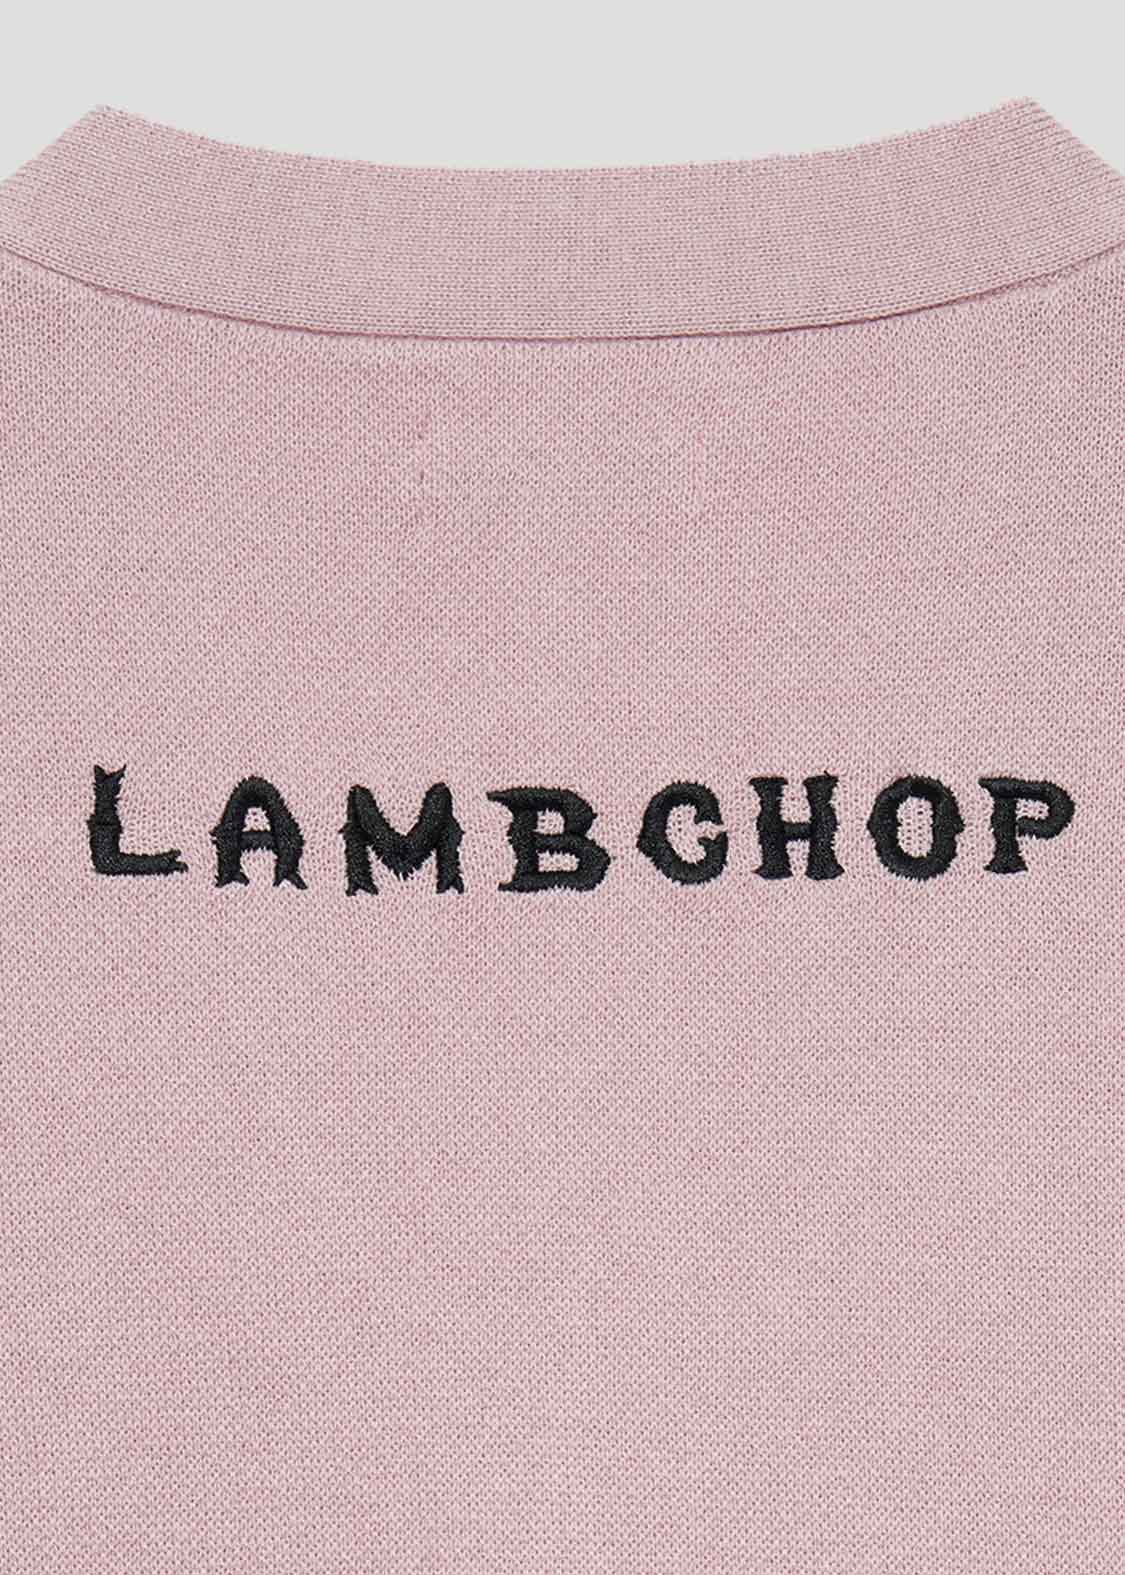 Knit Vest (Lamb Chop Skate)